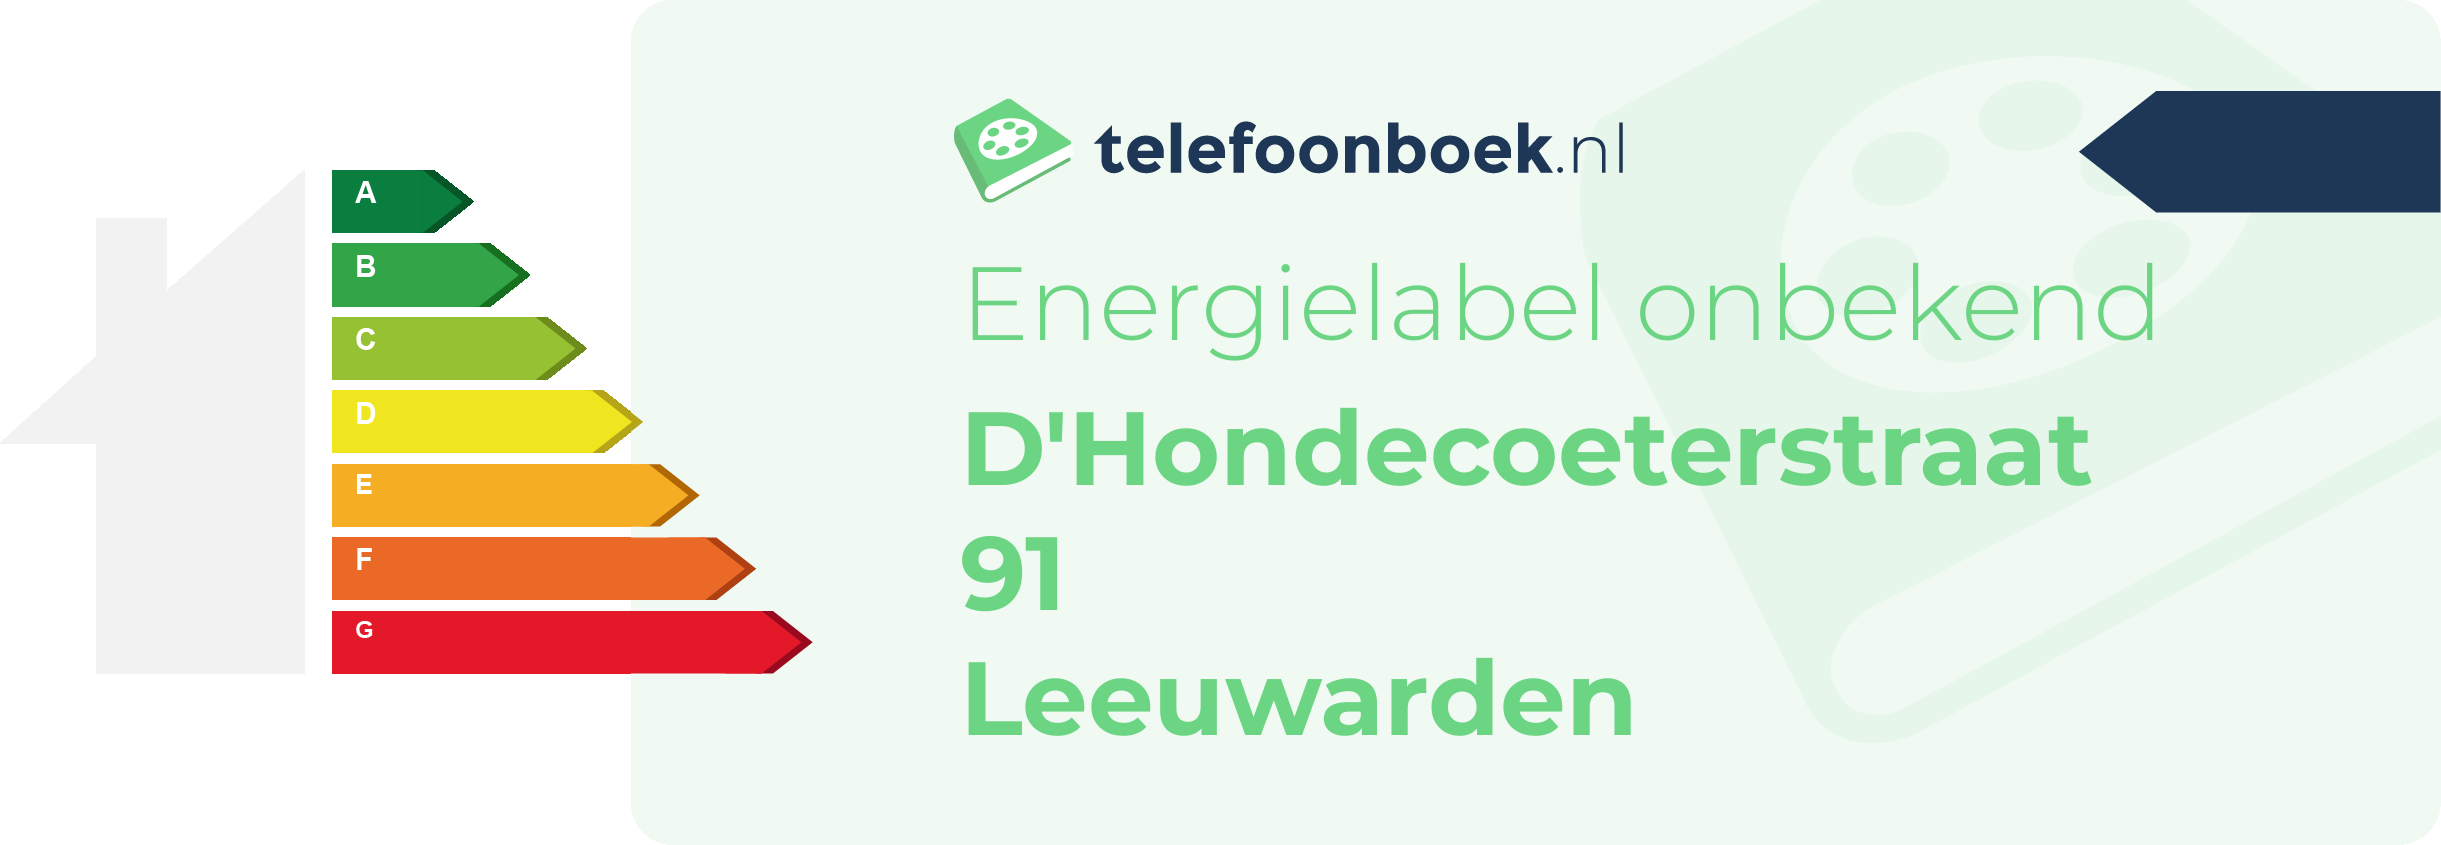 Energielabel D'Hondecoeterstraat 91 Leeuwarden